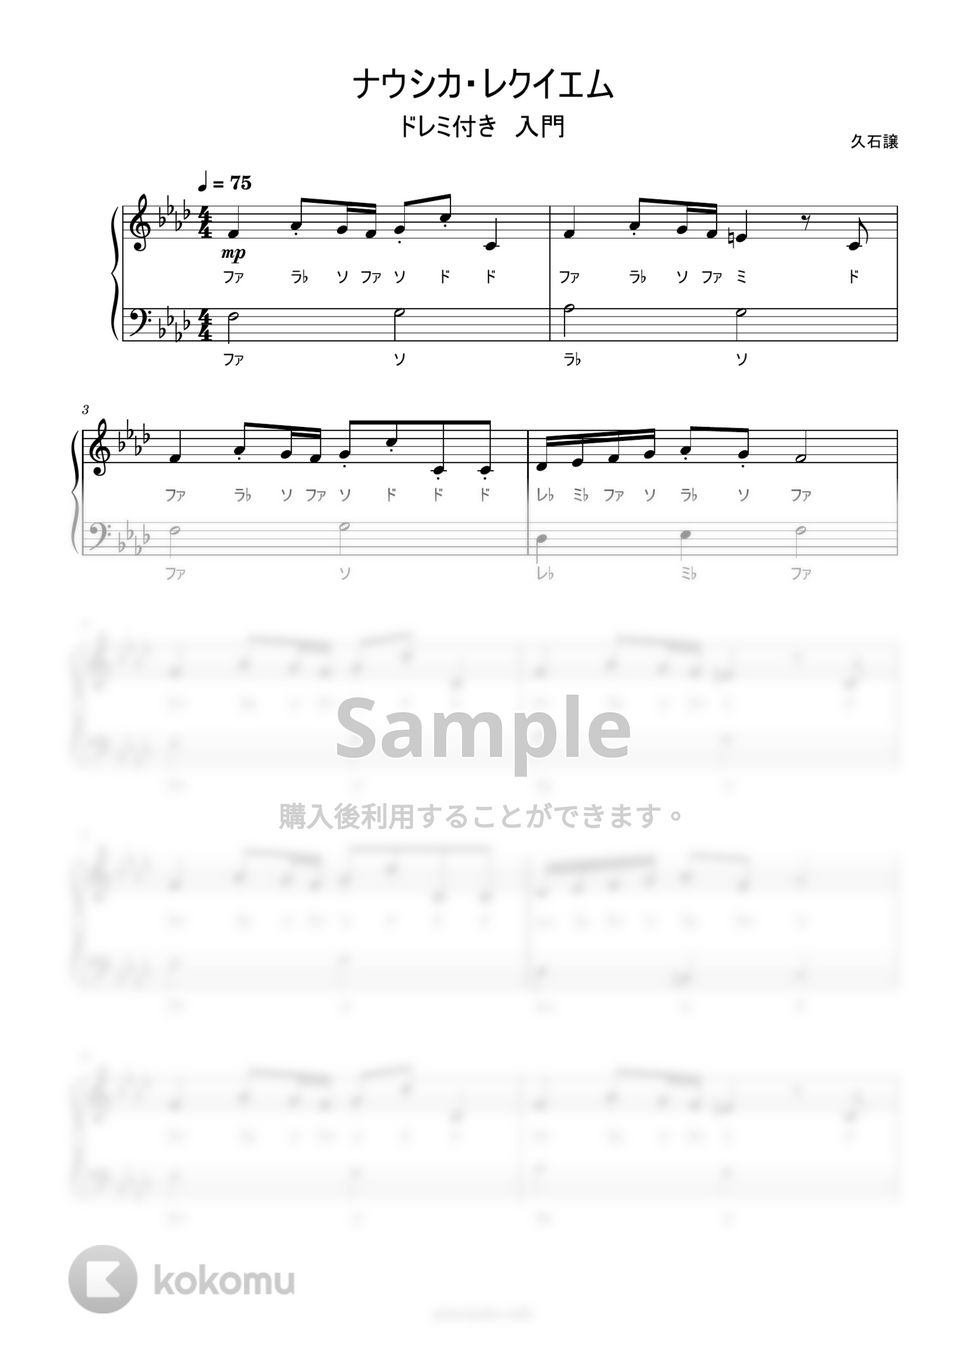 久石譲 - ナウシカ・レクイエム (ドレミ付き簡単楽譜) by ピアノ塾